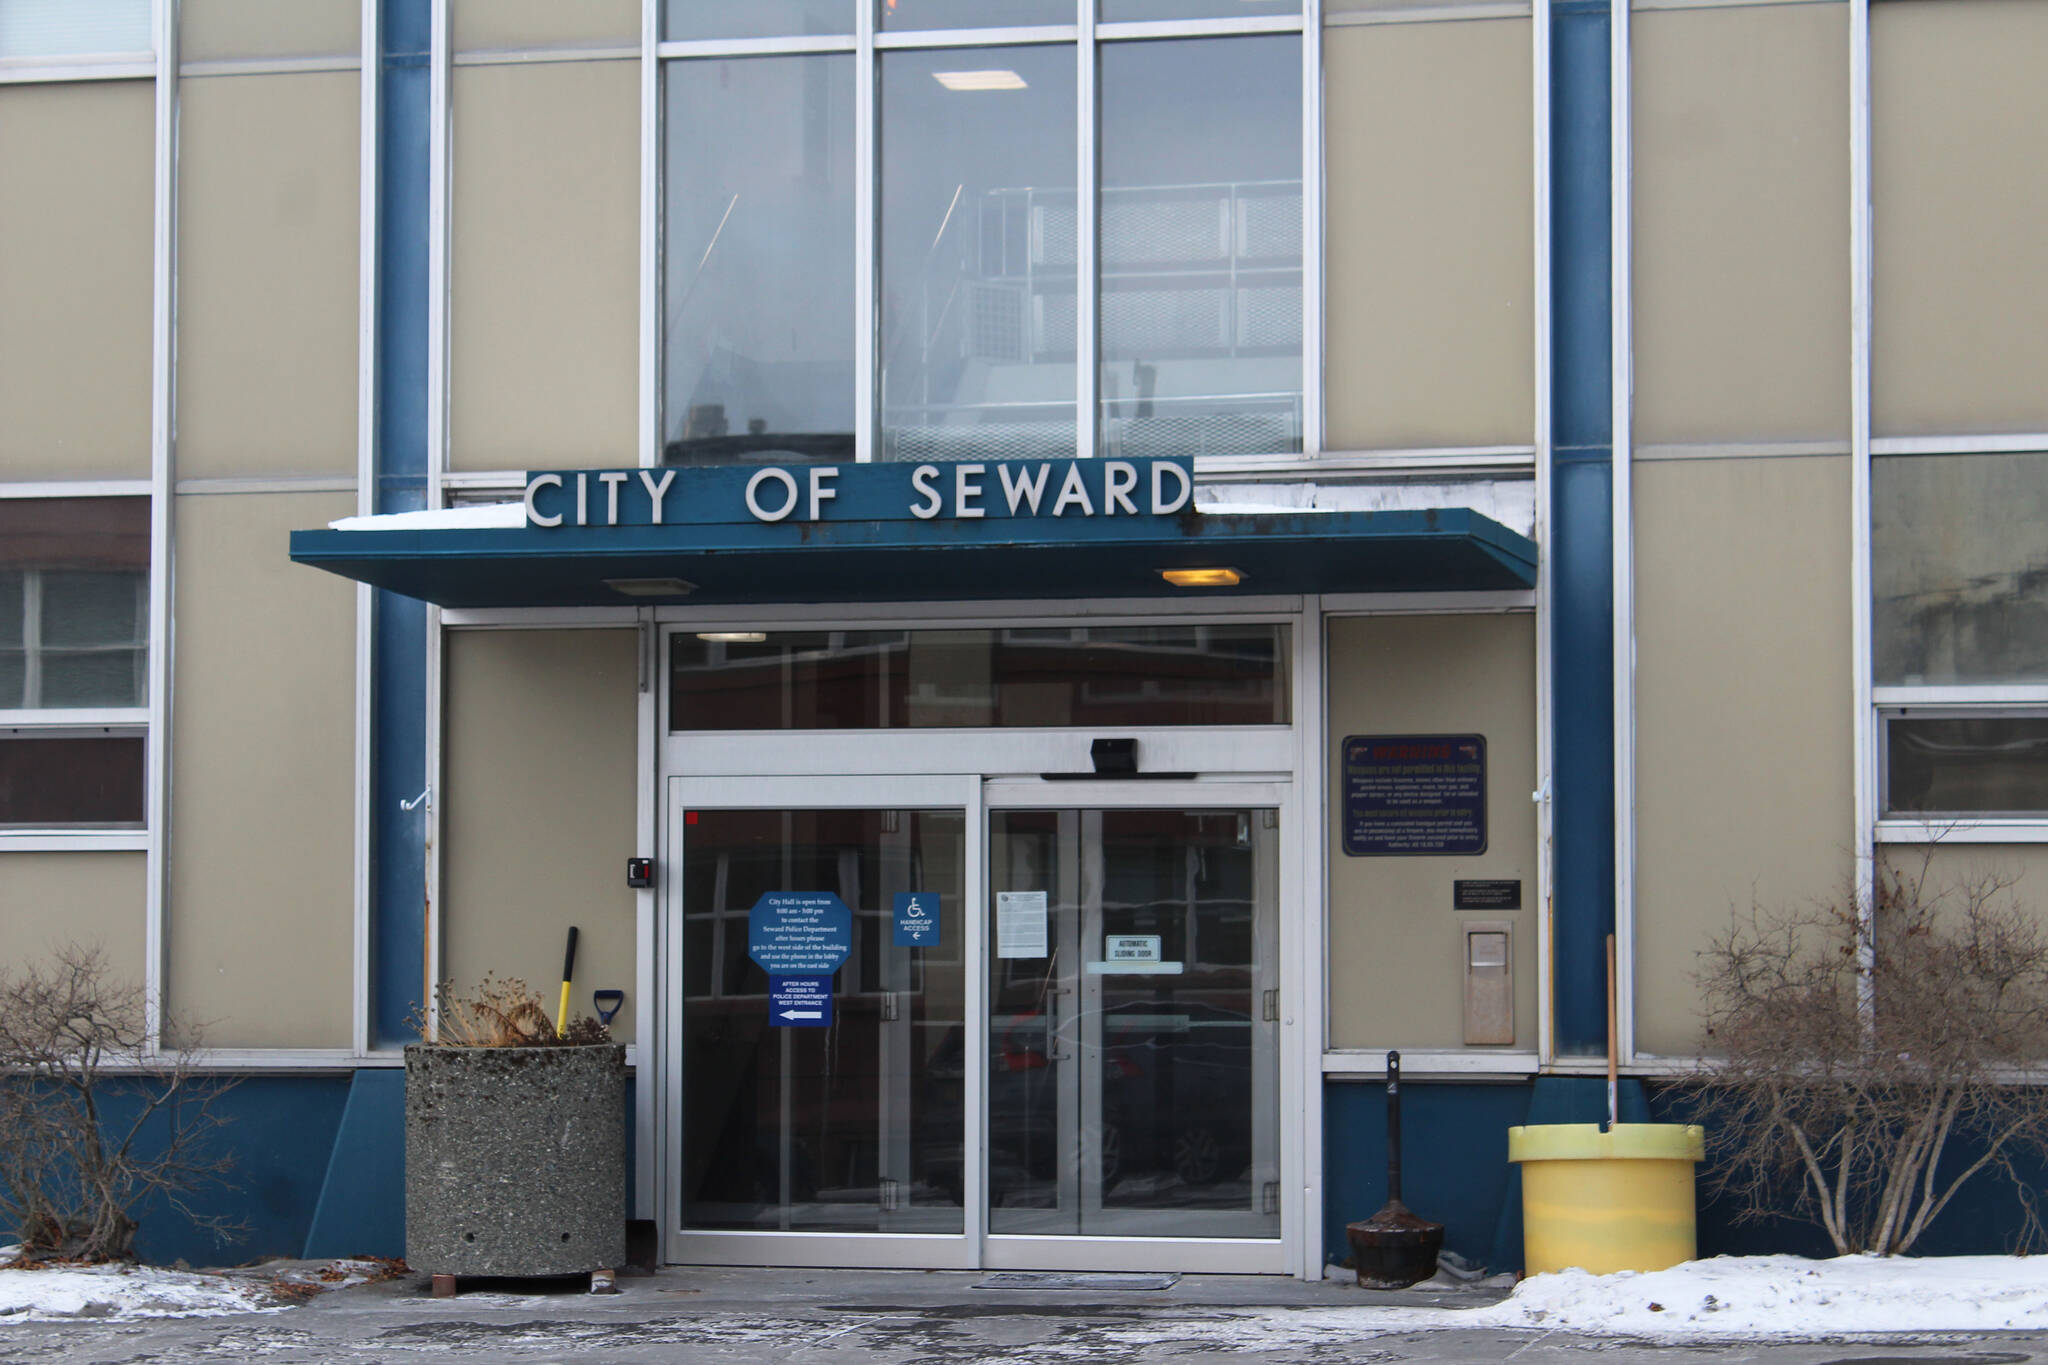 Signs direct visitors at Seward City Hall on Sunday, Nov. 28, 2021 in Seward, Alaska. (Ashlyn O’Hara/Peninsula Clarion)